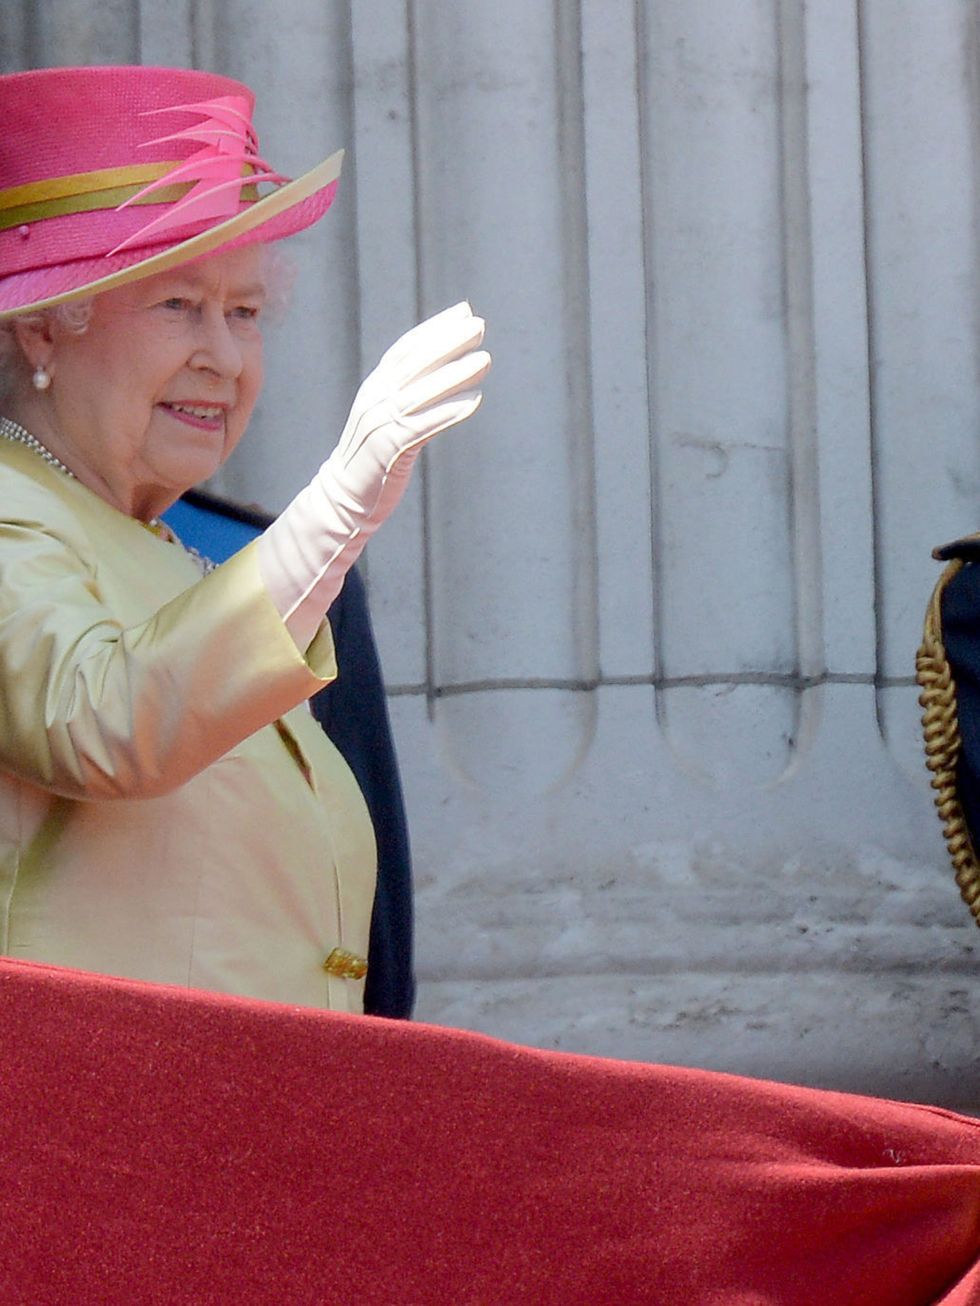 <p>They wont be short of friends here; The Queen also lives in Westminster. Perhaps shell invite the showbiz-royalty couple over for a neighborly cup of tea.</p>